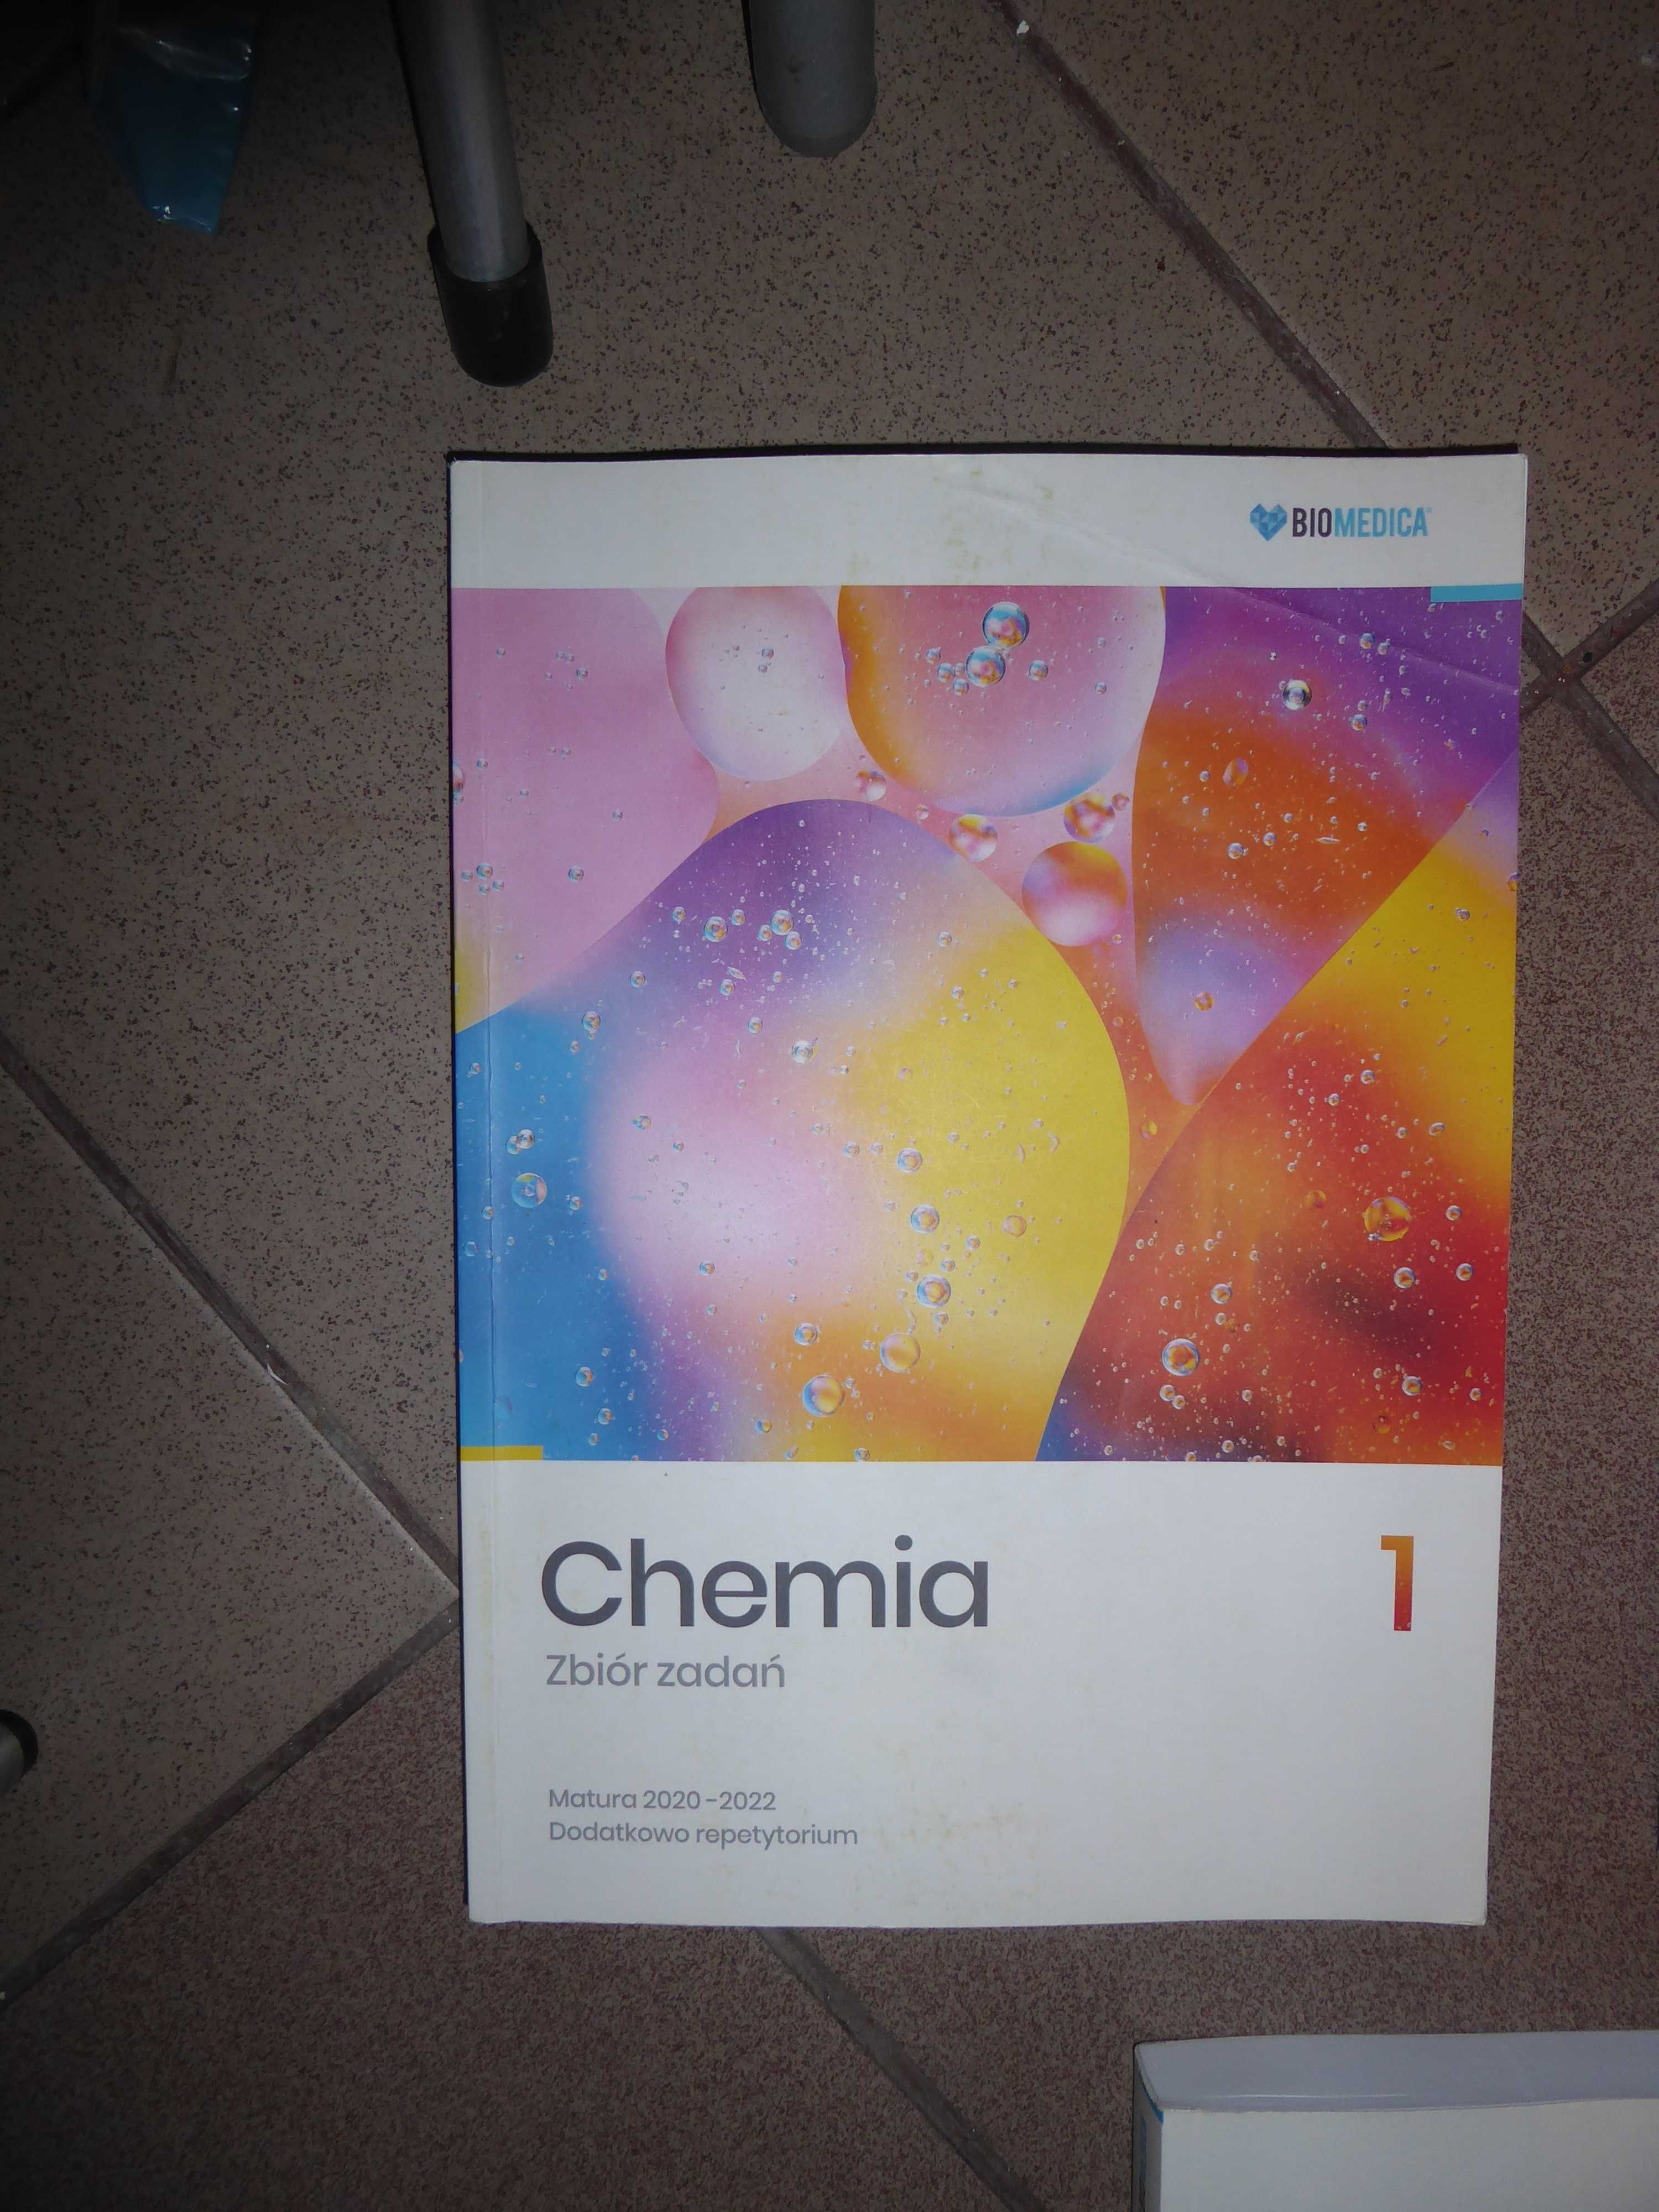 Chemia 1, 2 i 3, zbiór zadań. Biomedica. Najnowsze wydanie.